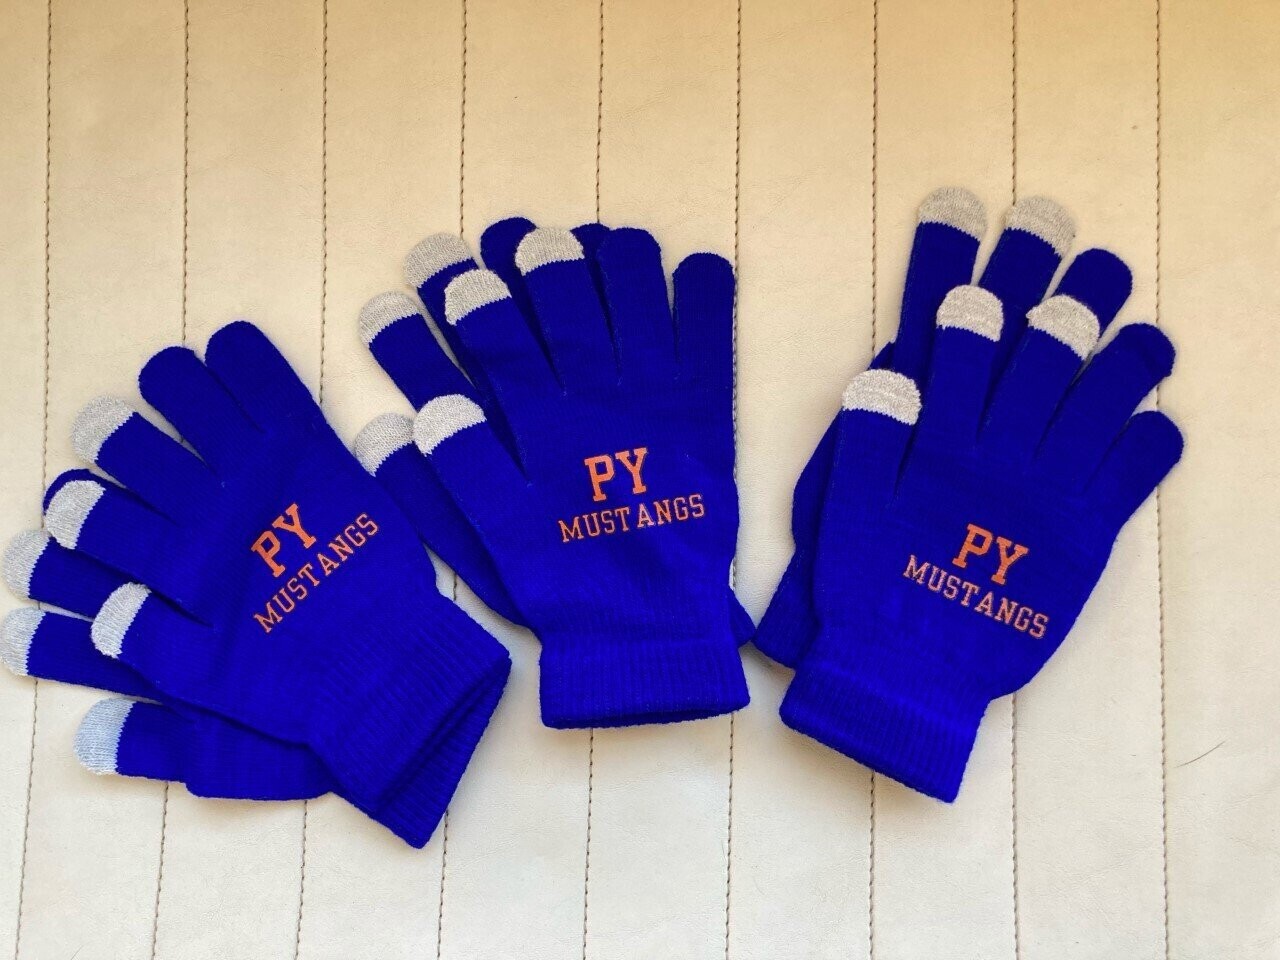 Penn Yan Mustangs Gloves